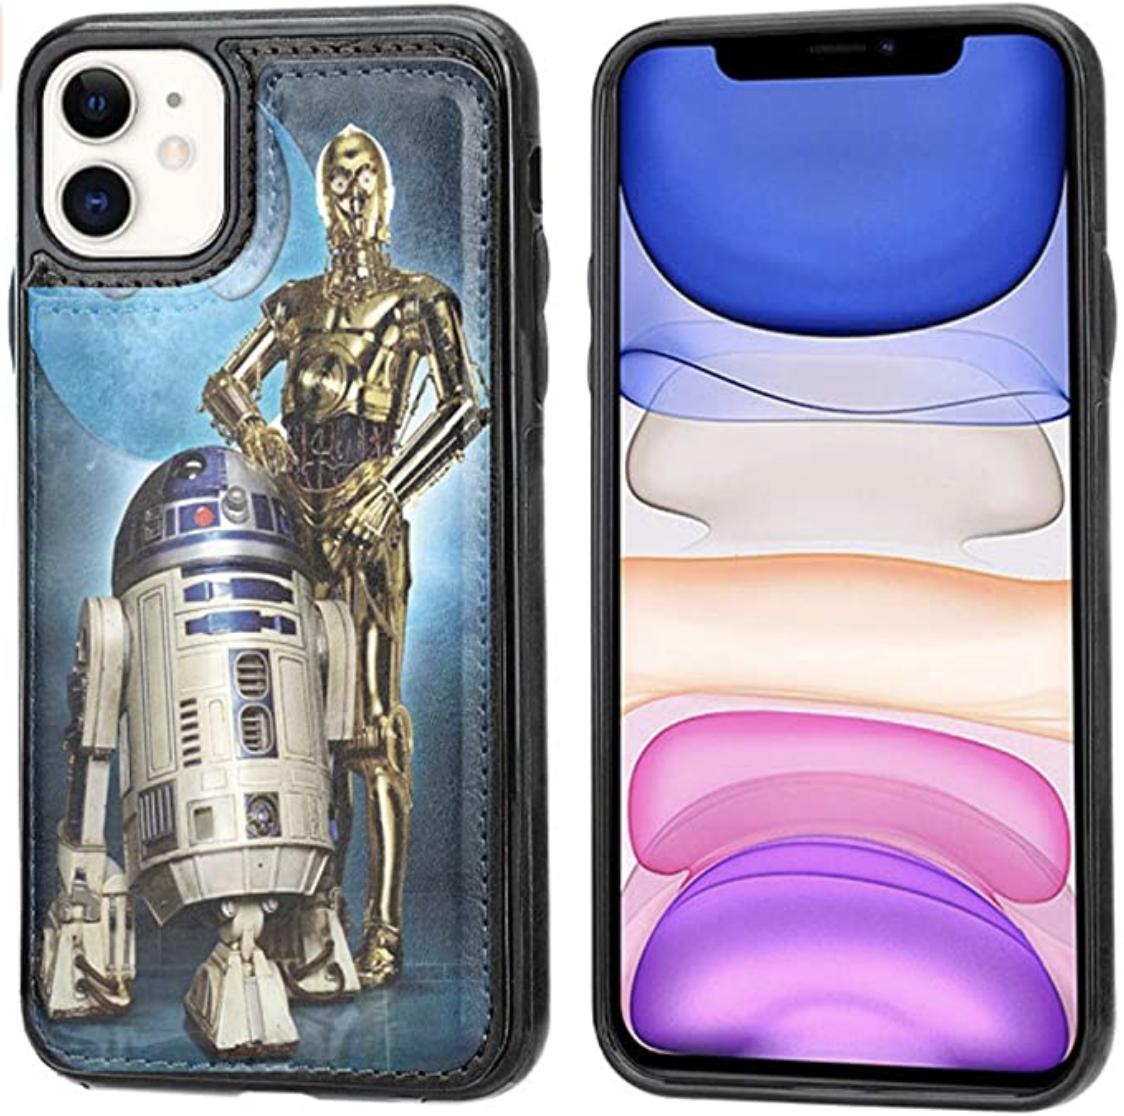 La Belle Case iPhone 11 Wallet Case Star Wars